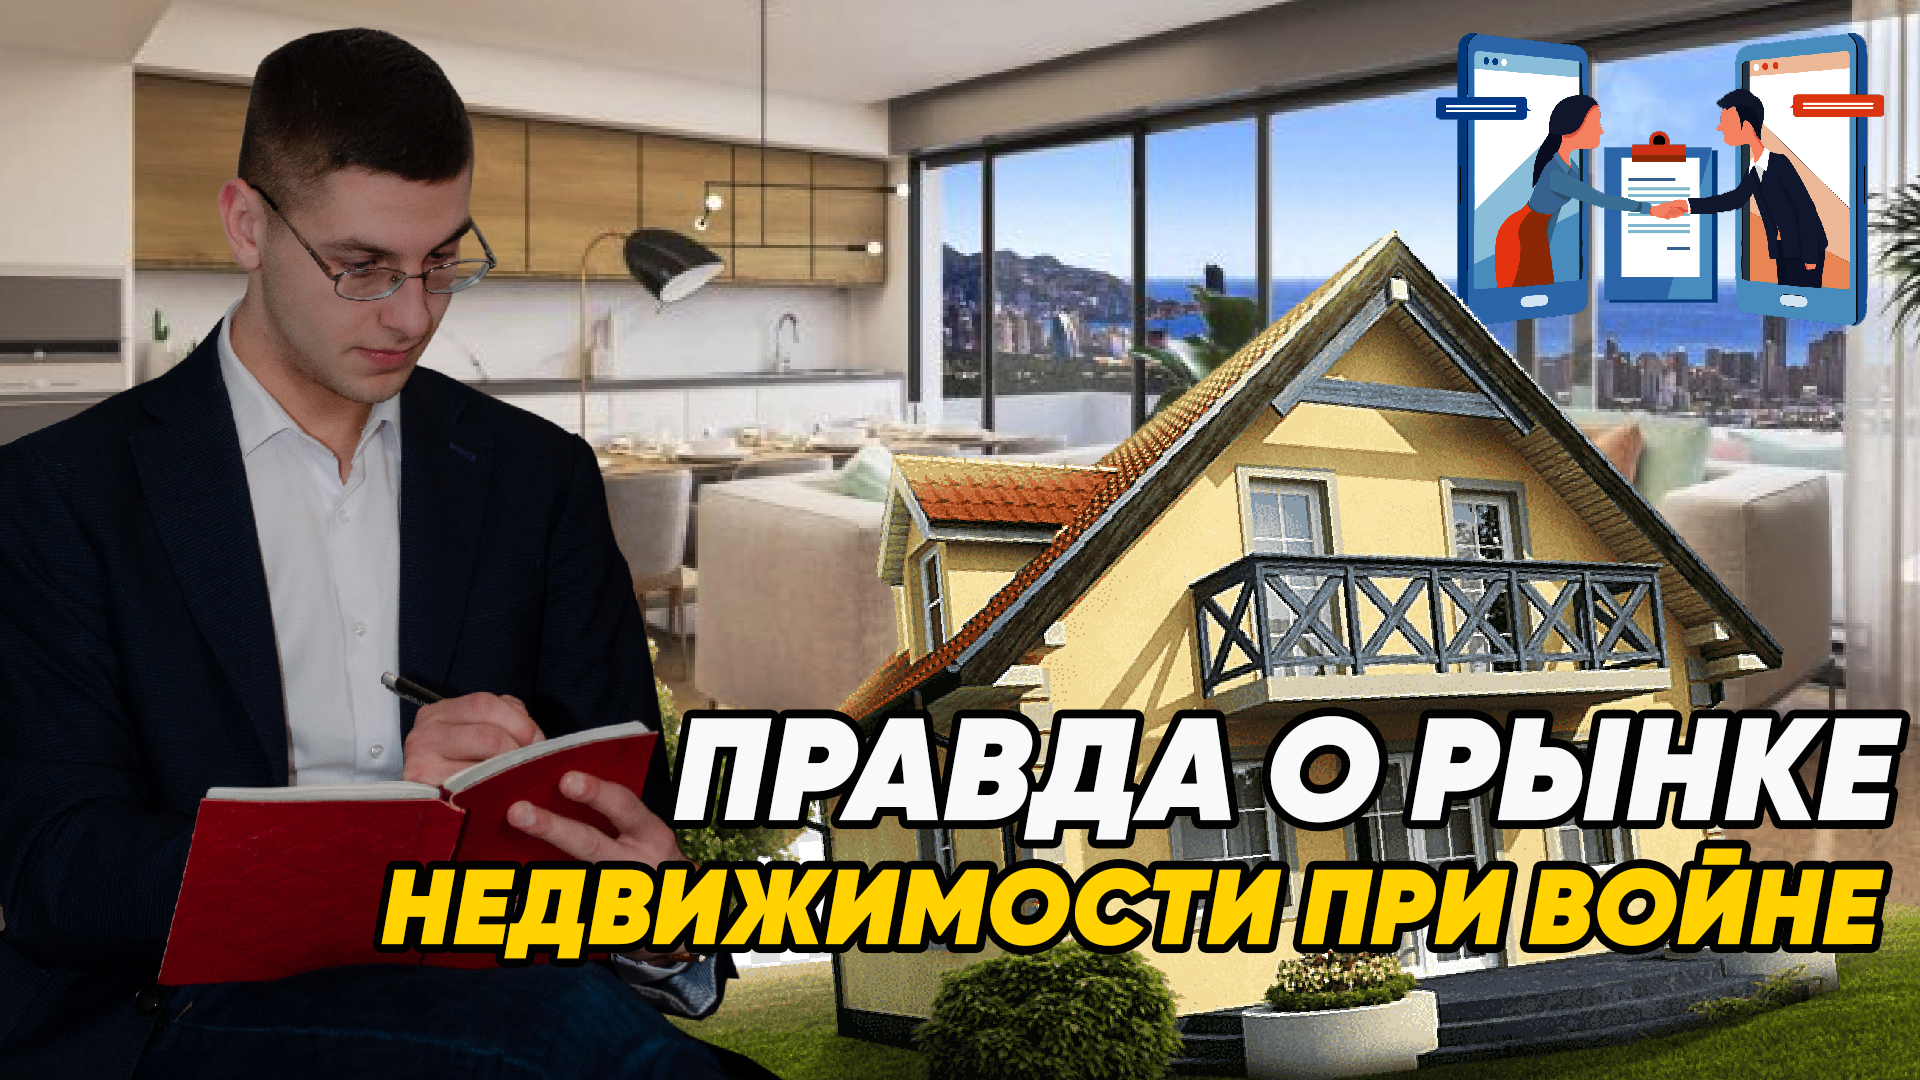 Ринок нерухомості 2022 | Україна нерухомість новини - f759bfb9c69b2d52d2e99521c85bd415.png